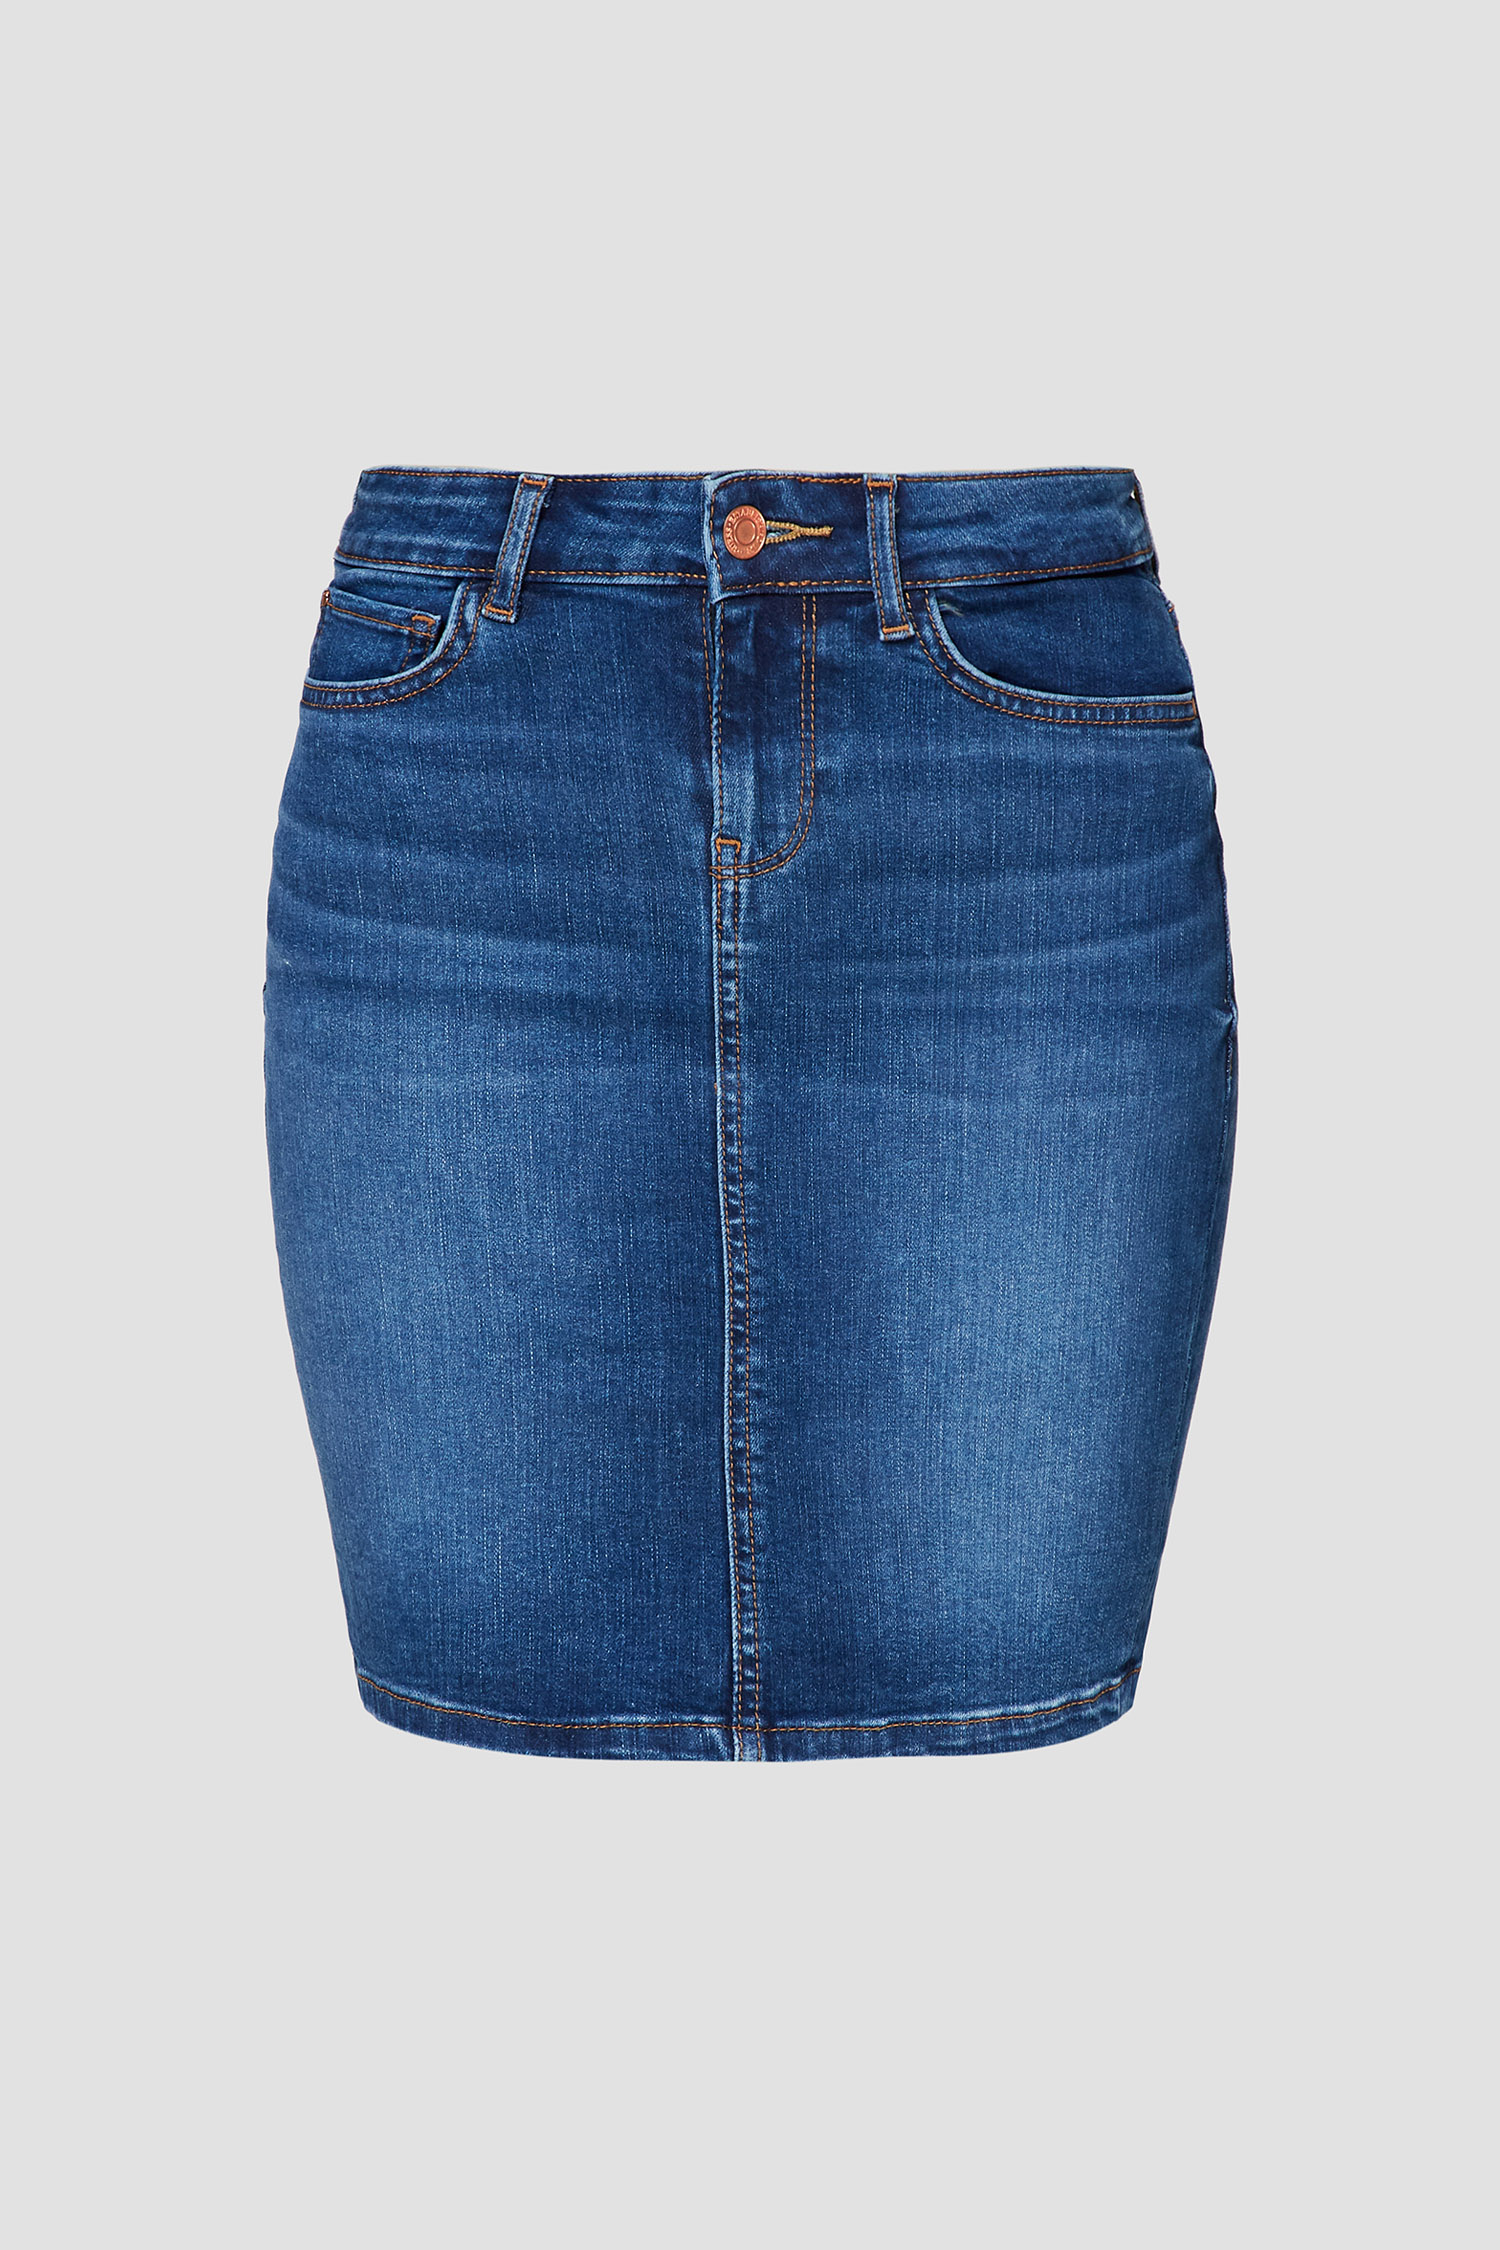 Синяя джинсовая юбка для девушек Guess W0YD80.D4484;SHEF